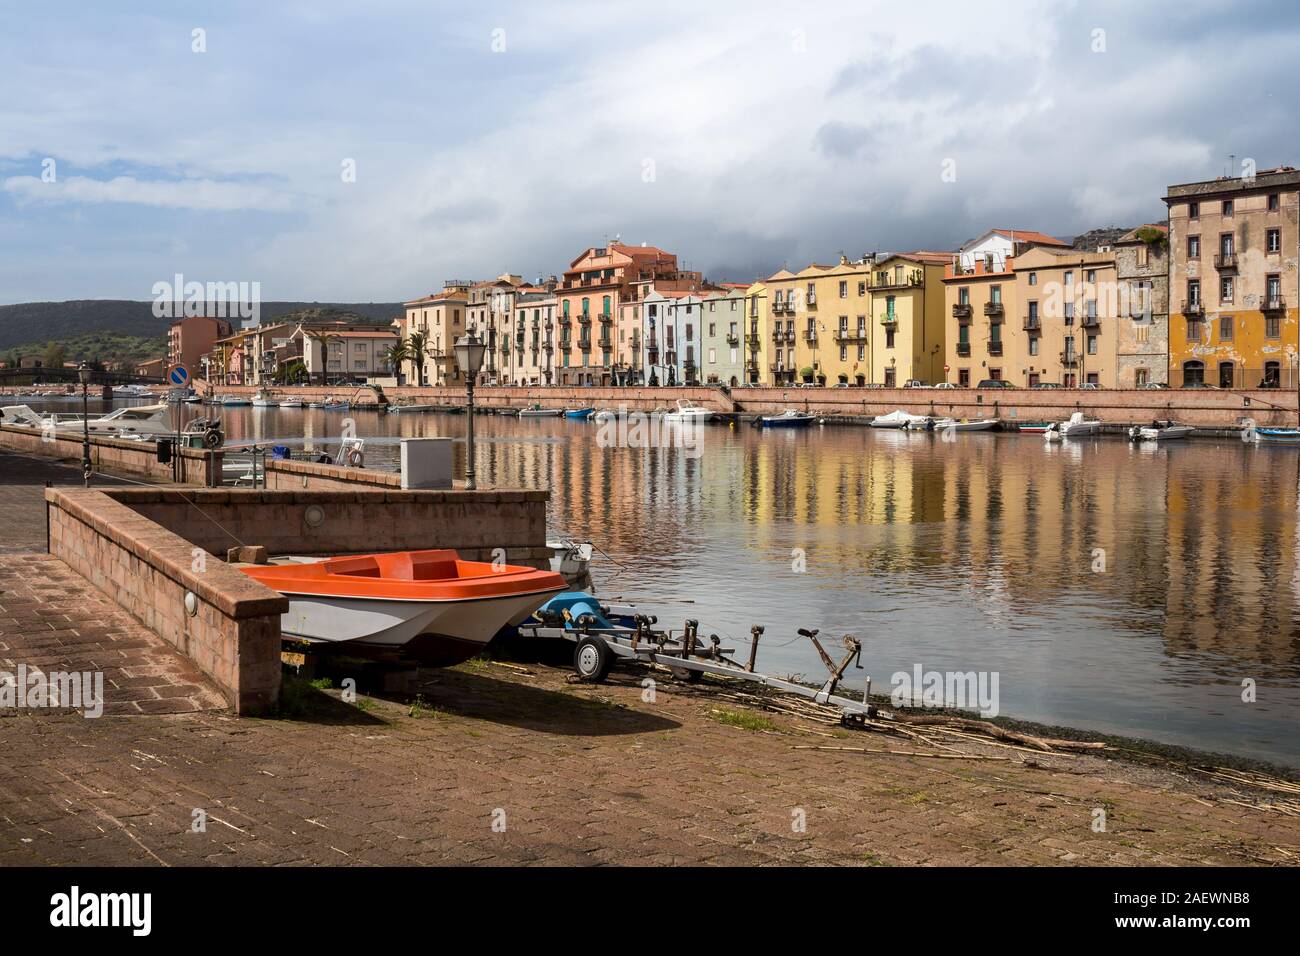 La colorata Vecchia case sulle rive del fiume Temo, con molte imbarcazioni. Rosso barca sul lungomare. Rainy cielo nuvoloso. Bosa, Sardegna, Italia. Foto Stock